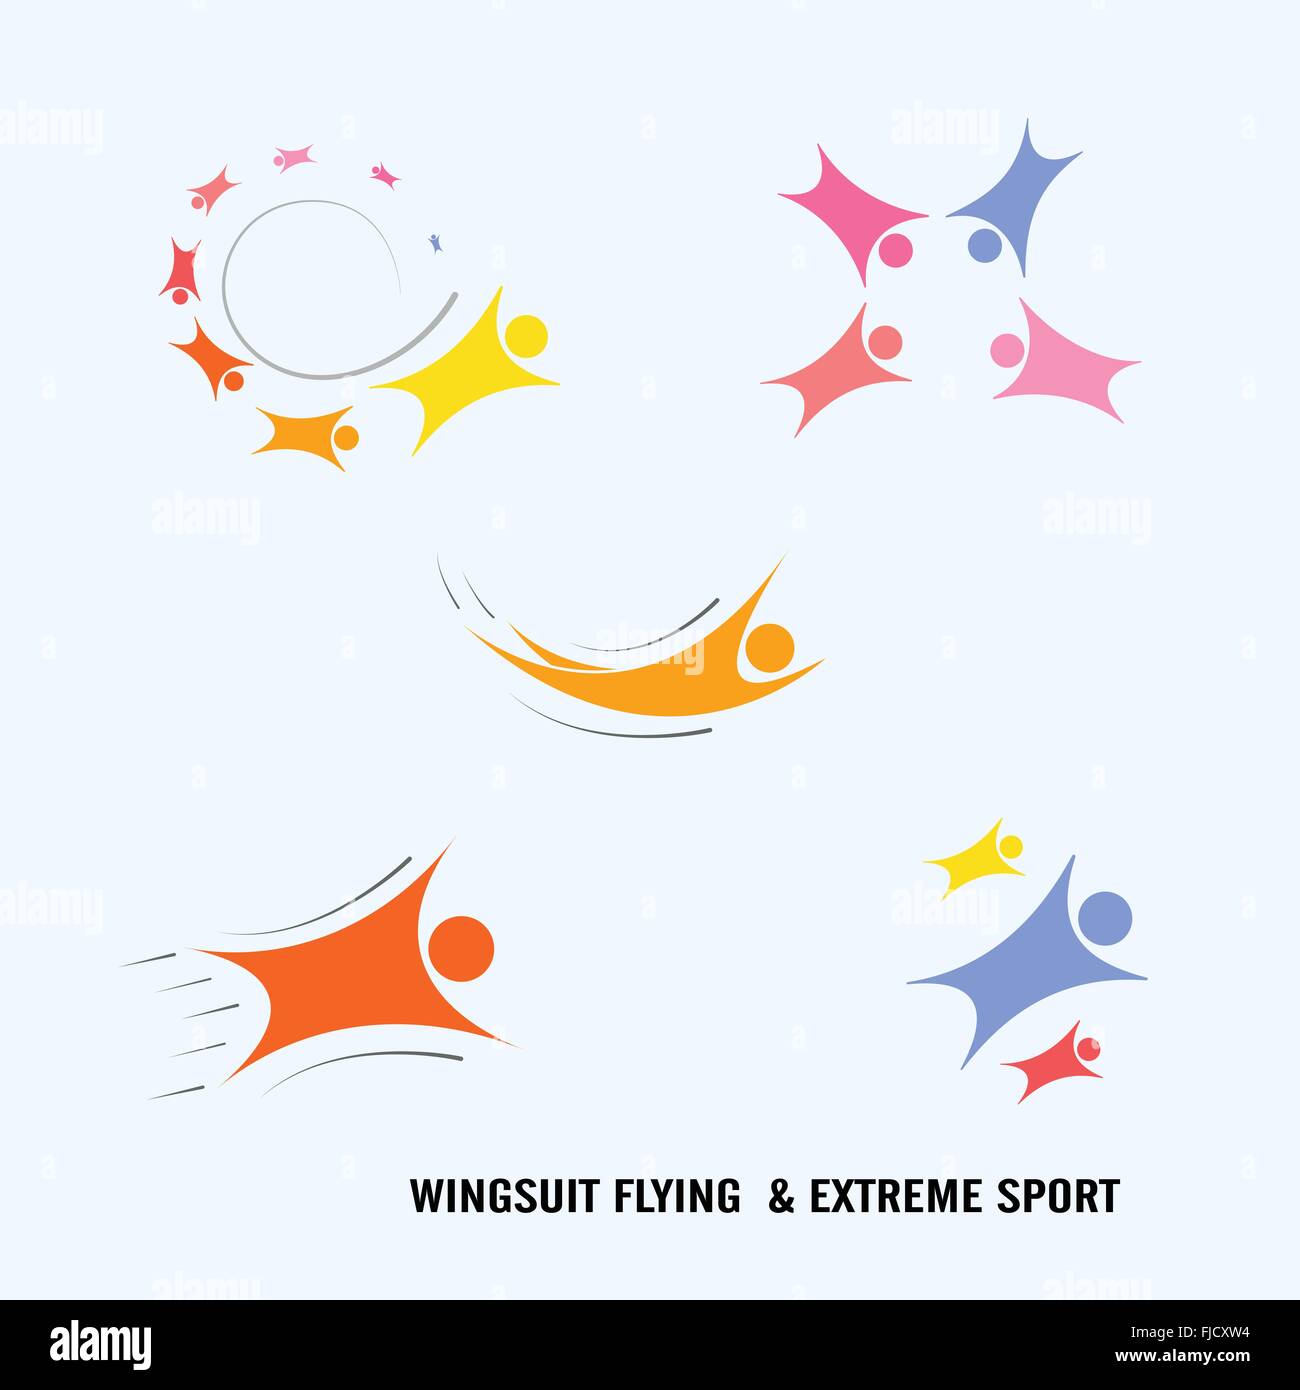 Vol Wingsuit Wingsuit Flying..Les soins de santé et l'icône logo sport concept.Vector illustration Illustration de Vecteur